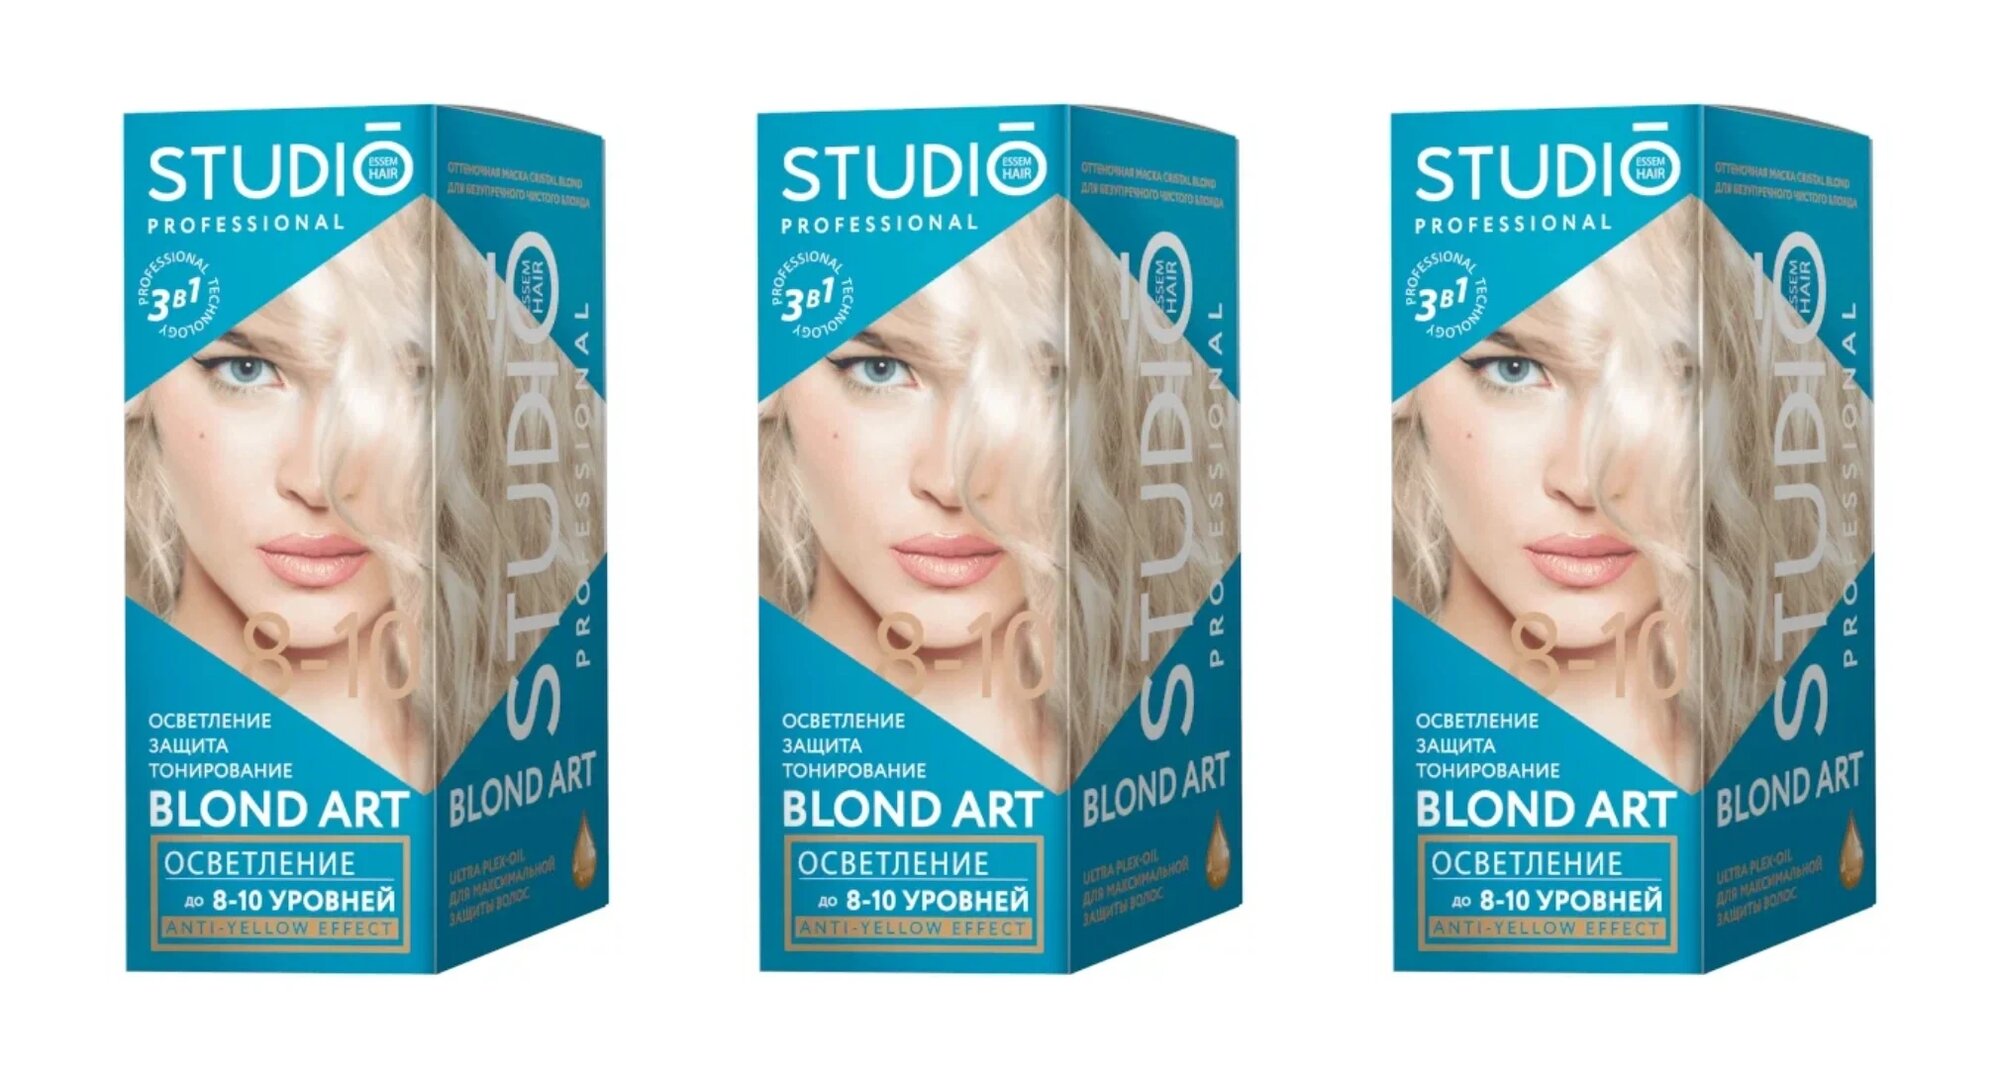 Осветлитель для волос Studio Professional Blond Art, до 10 уровней осветления, 100 гр, 3 шт